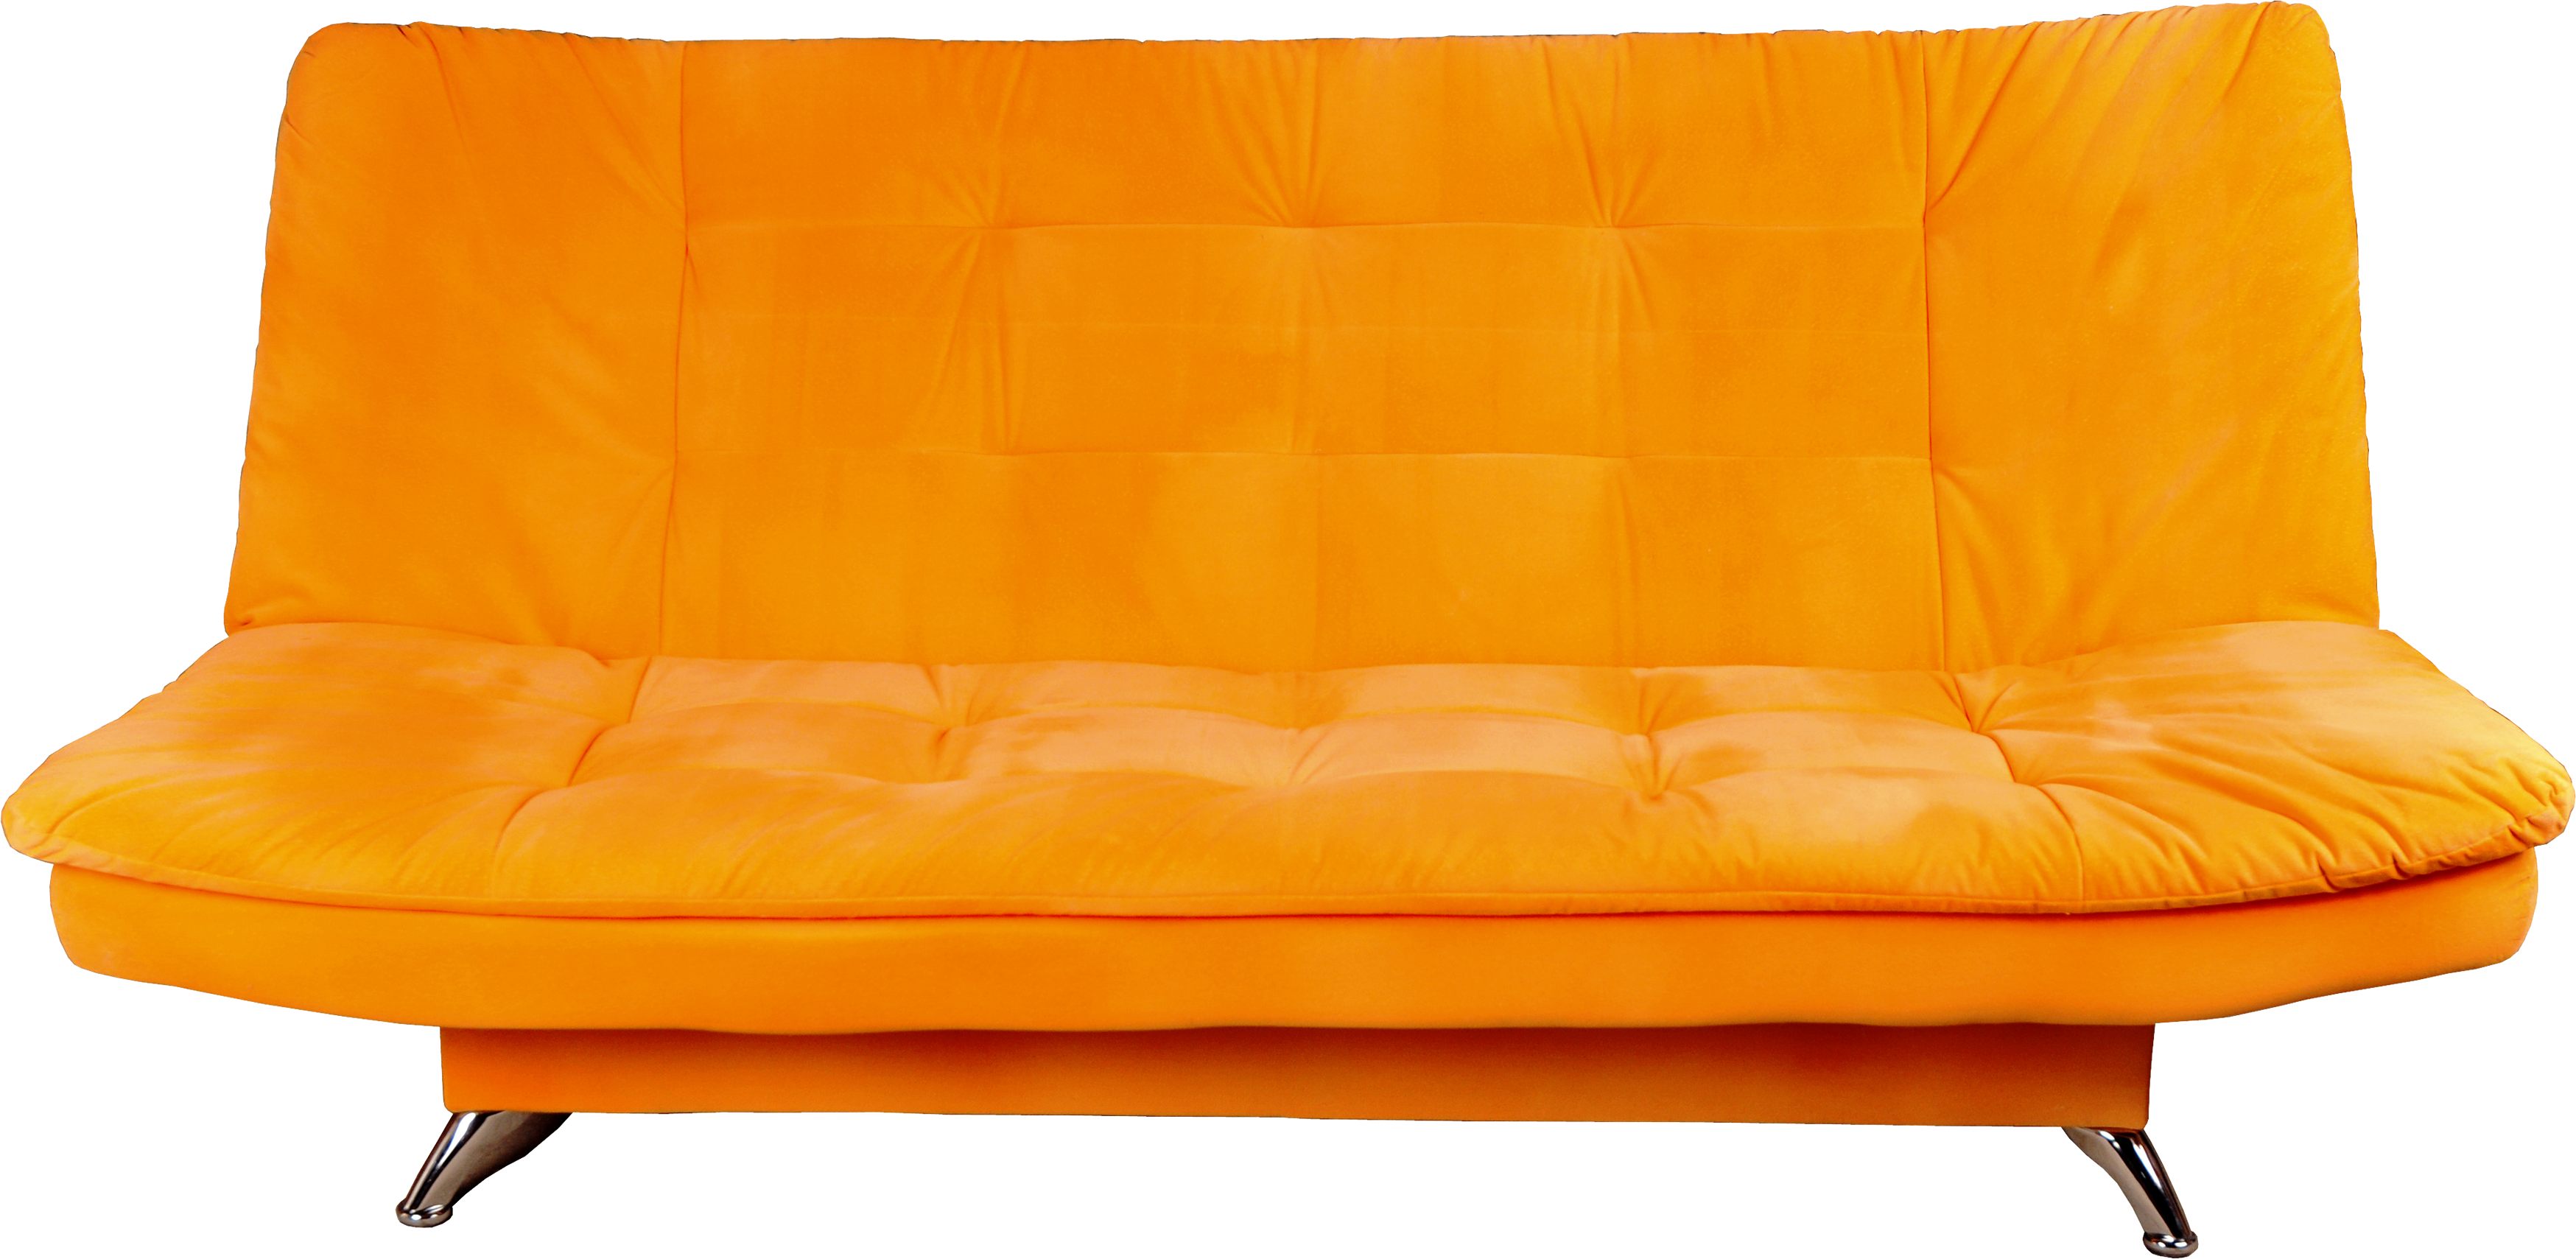 Oranges Sofa